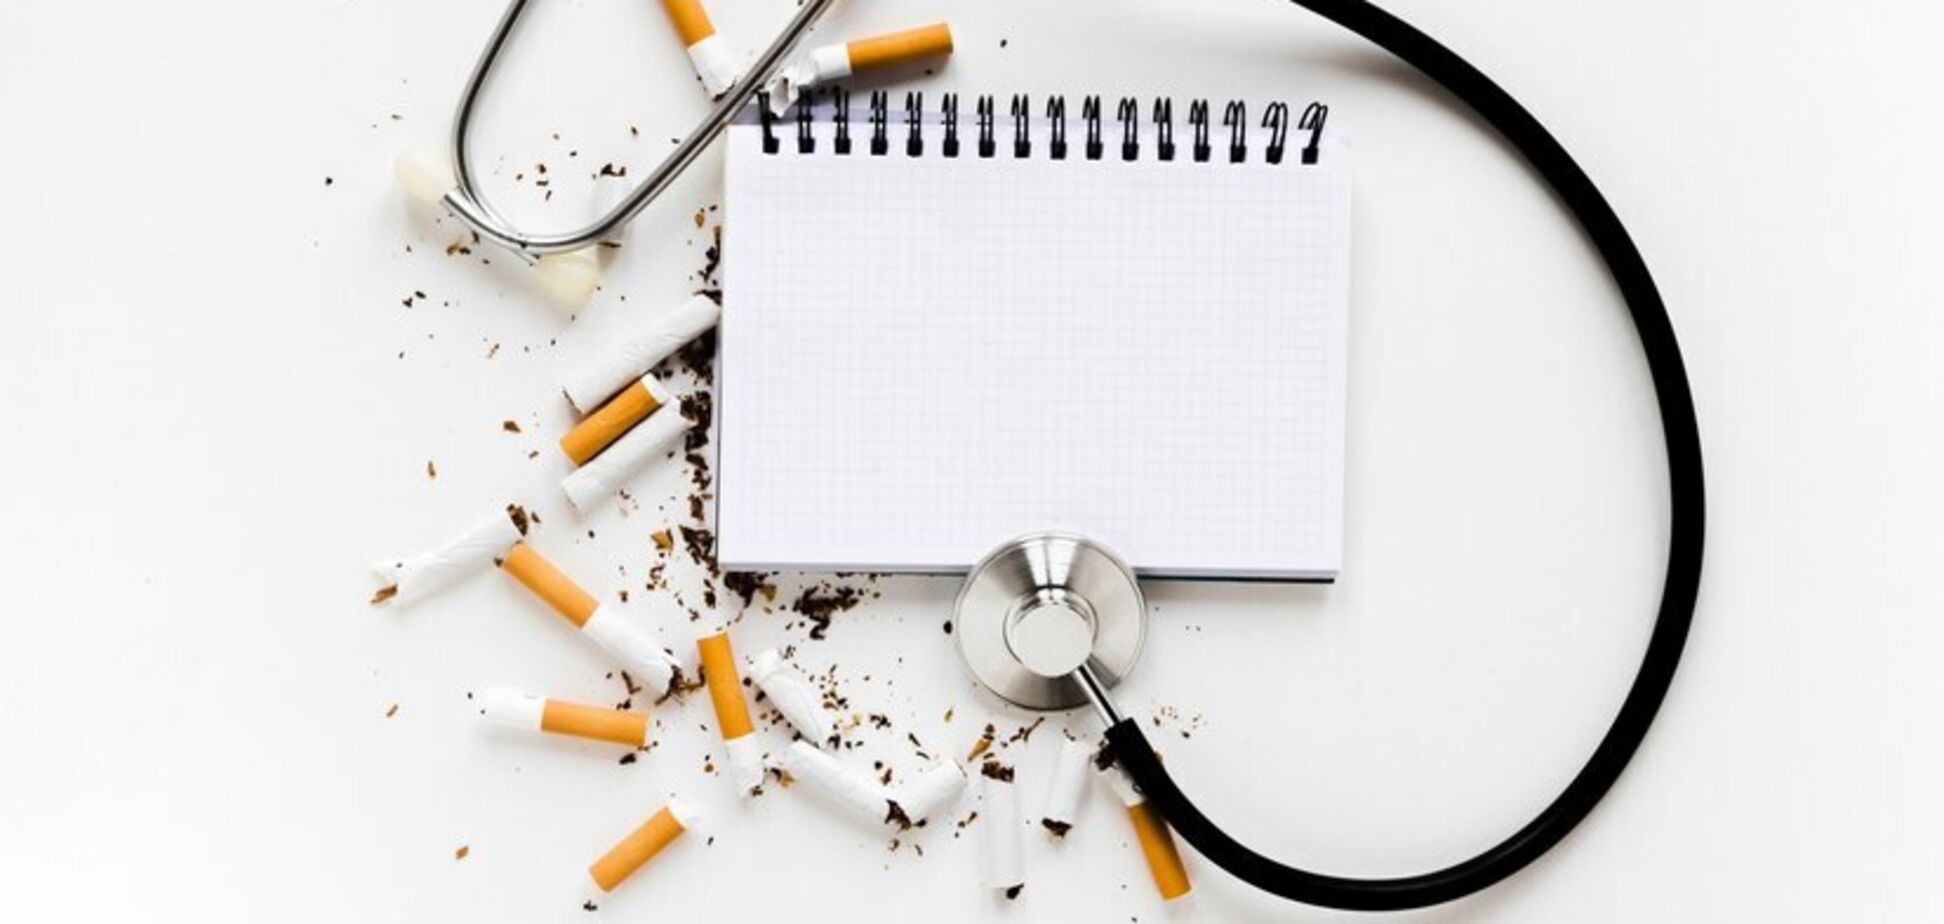 Консультант уряду Сполученого Королівства Клайв Бейтс: 'Уряд має впроваджувати бездимну продукцію в боротьбі з курінням' 
